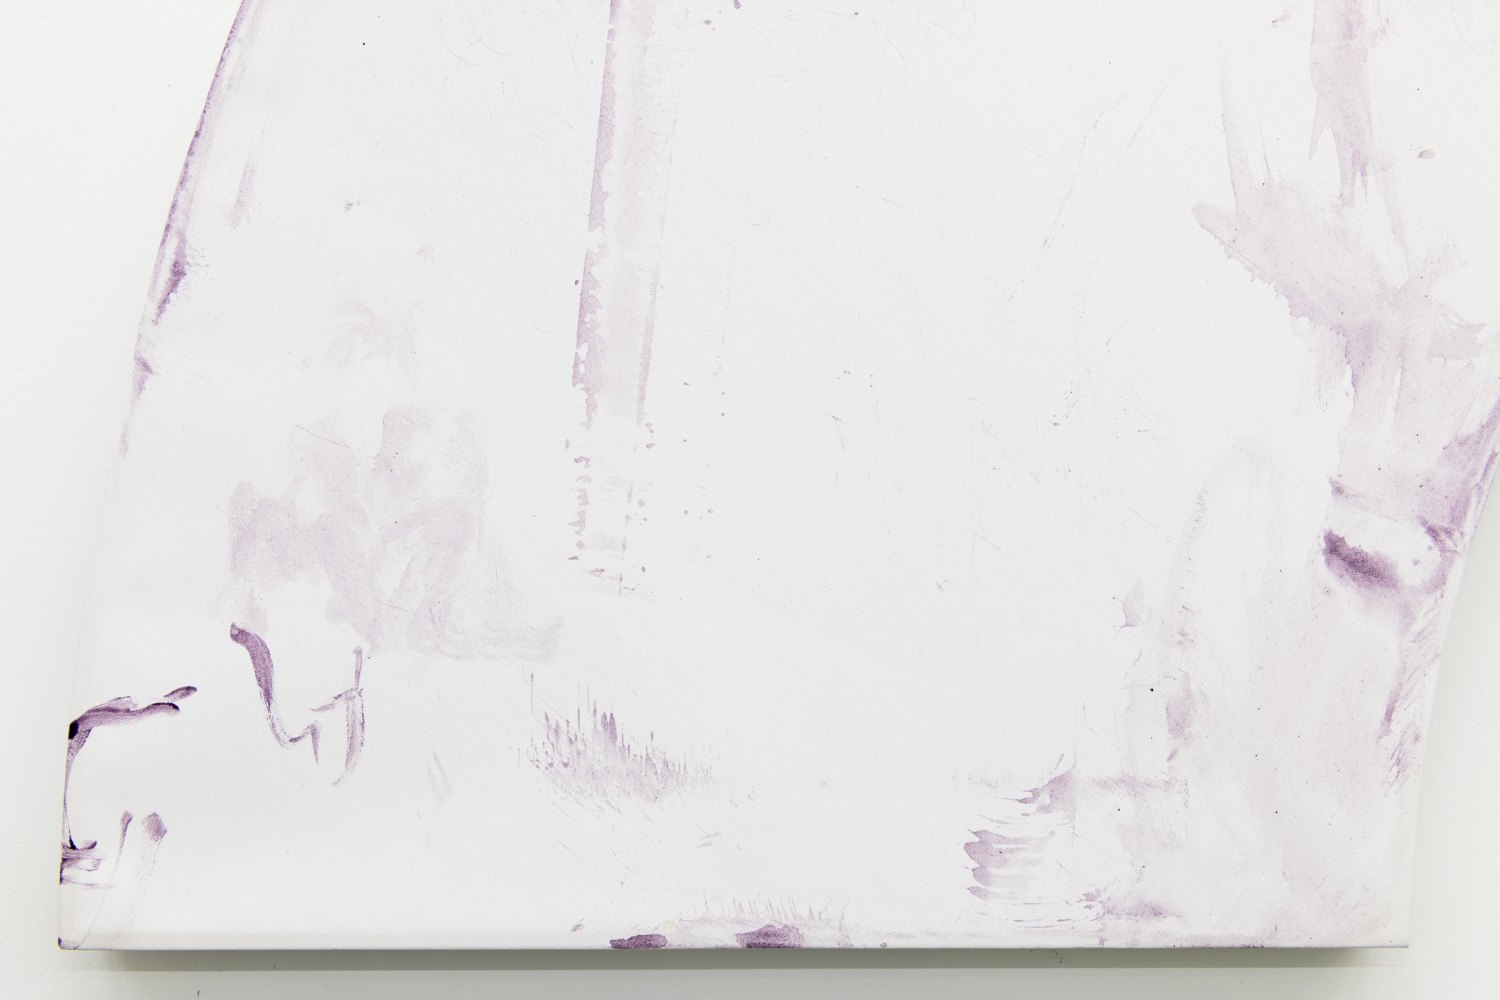 Fan, 2020, Tyrian purple on canvas, 218 x 109 x 2.5 cm, detail